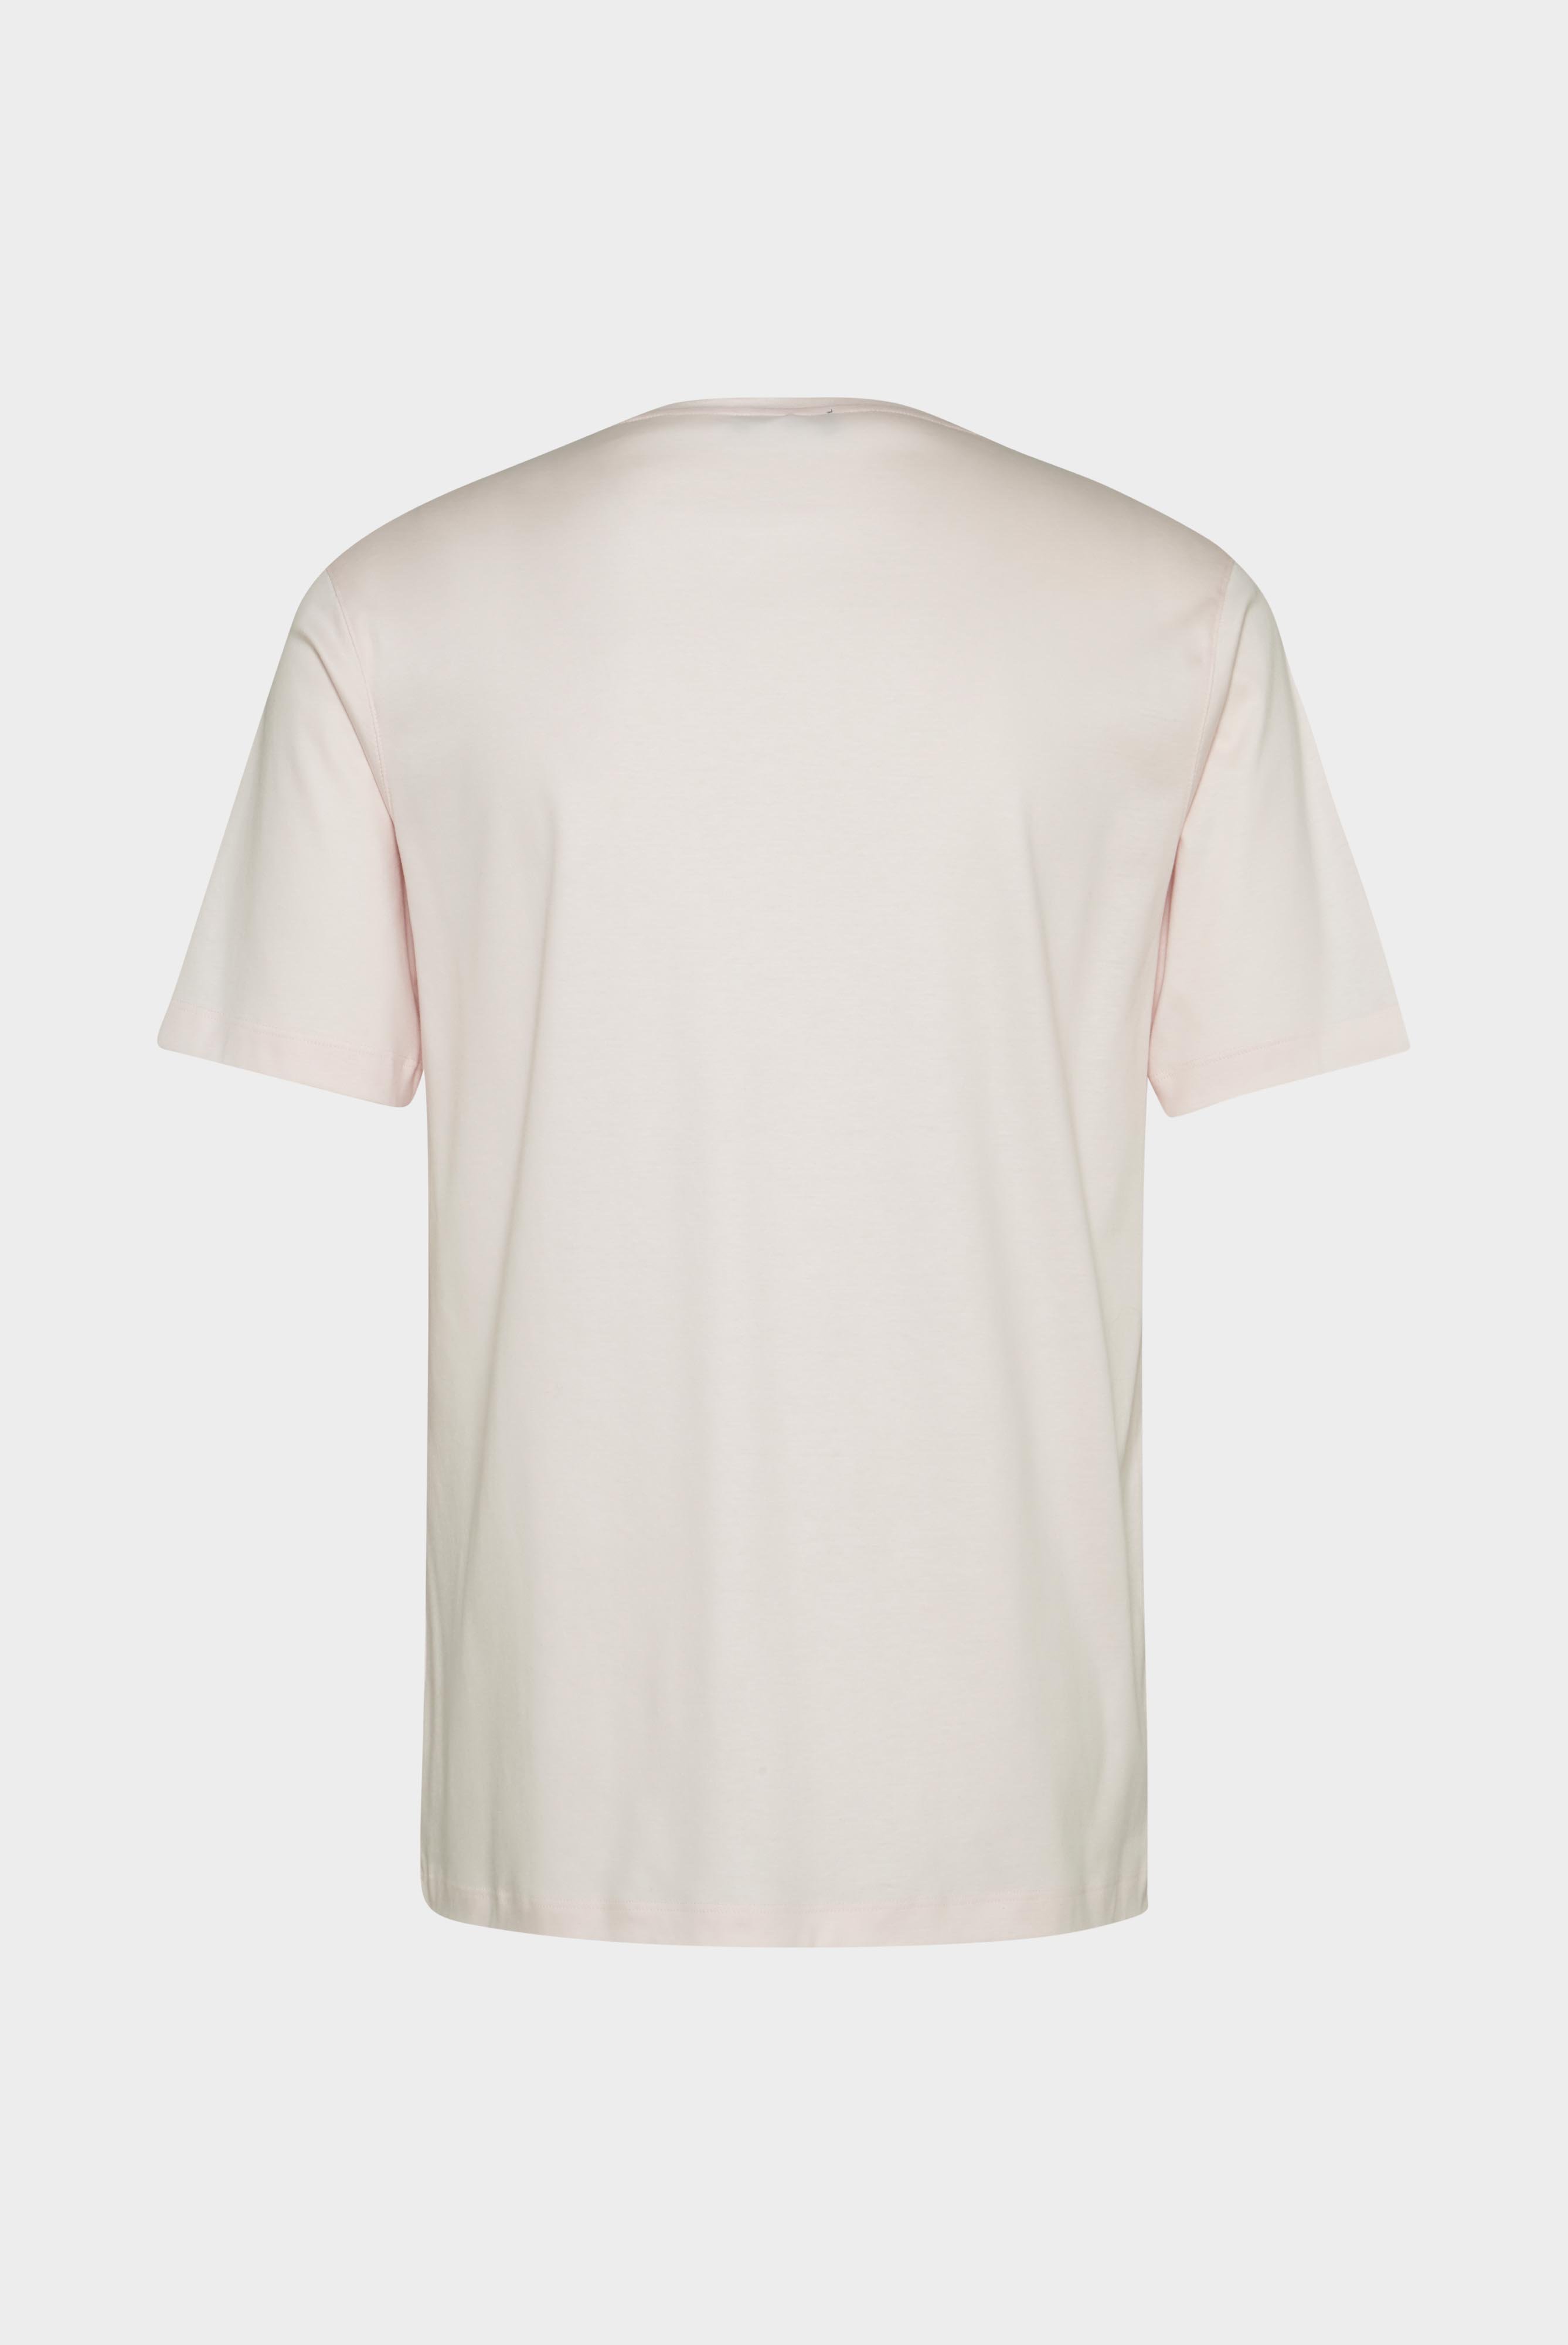 T-Shirts+Oversize Jersey T-Shirt mit Brusttasche+20.1776.GZ.180031.510.M